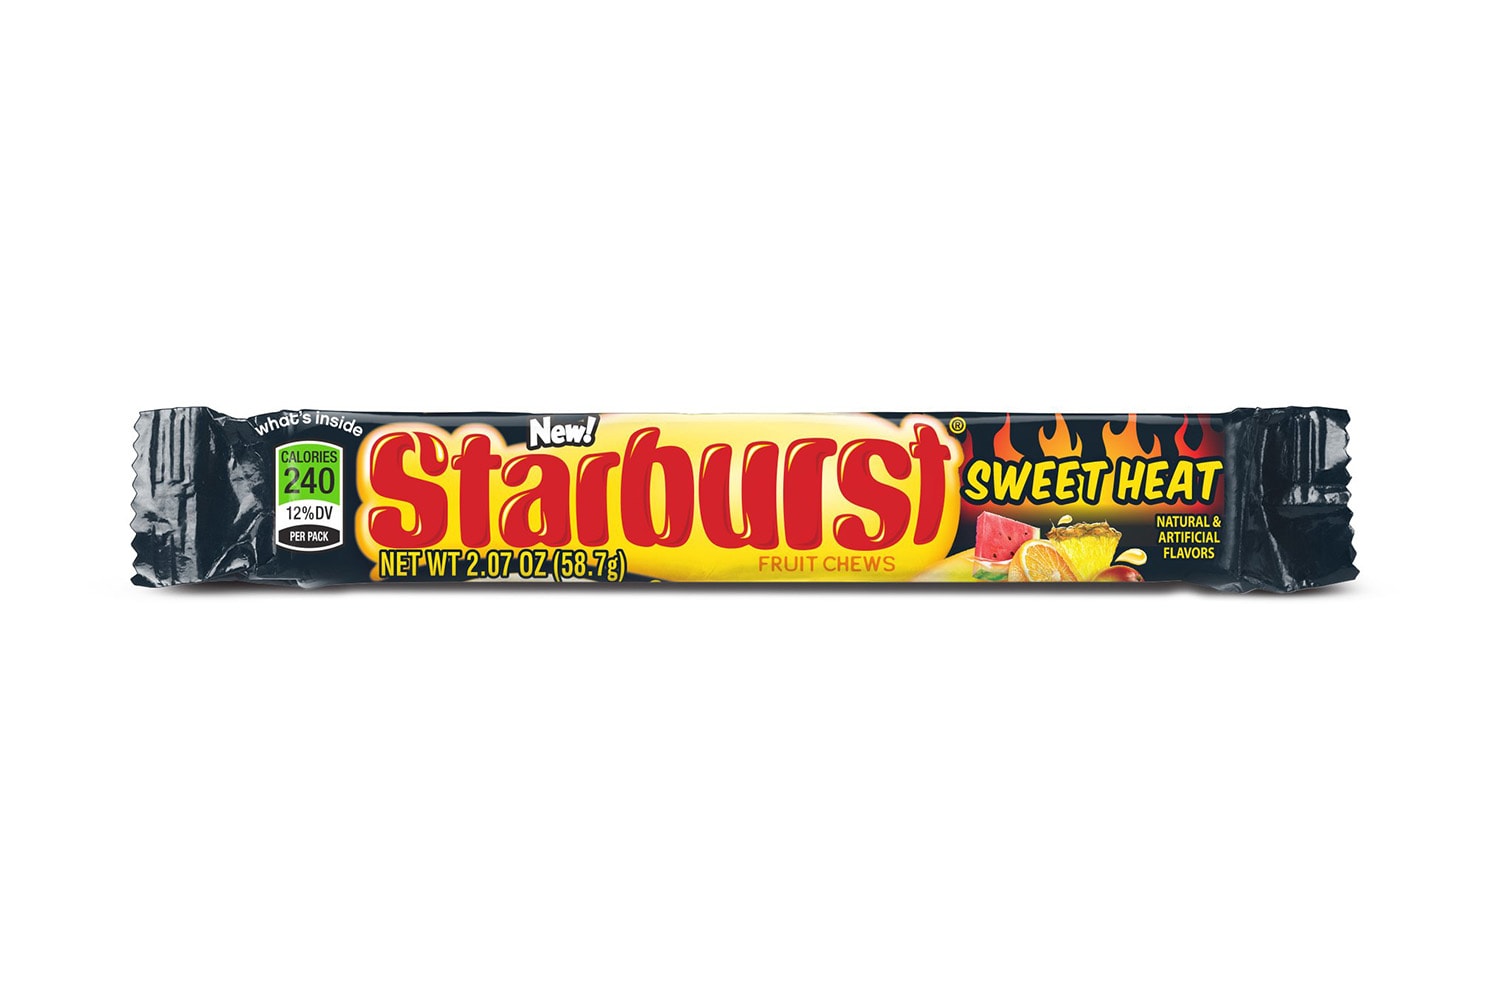 스키틀즈 스타버스트 2017 신제품 Skittles Starburst Sweet Heat